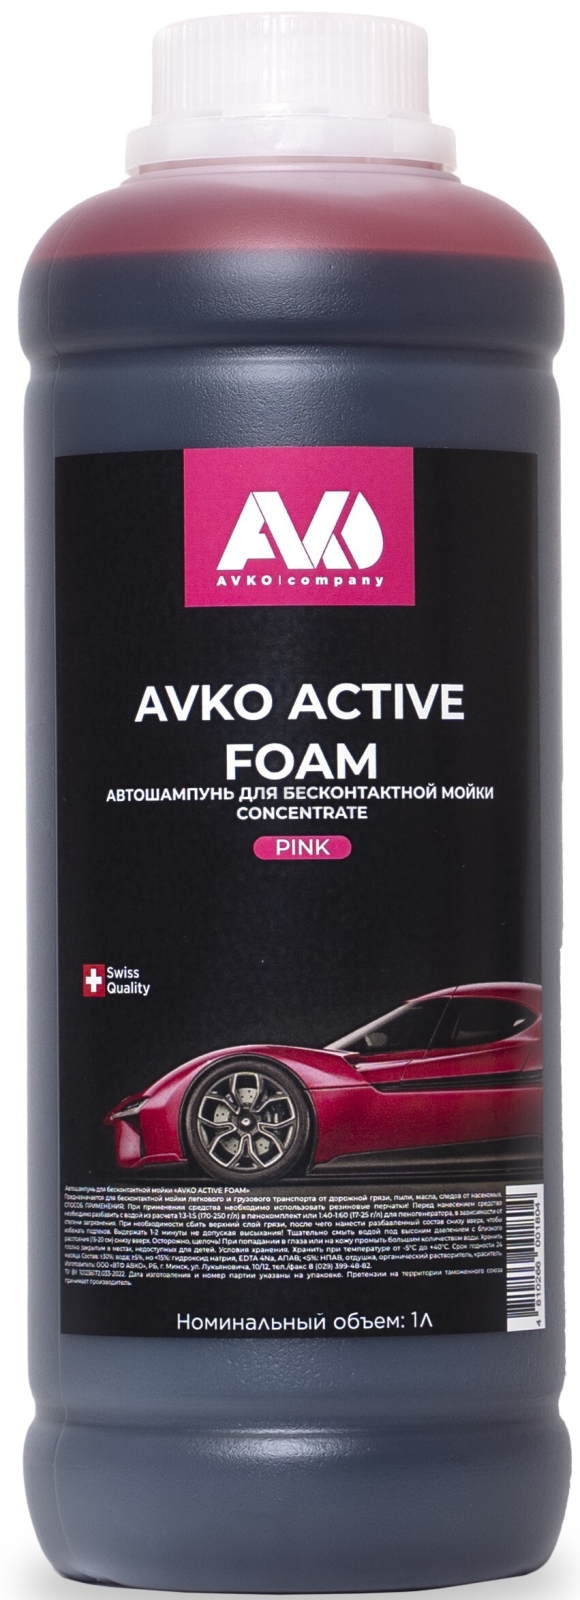 Автошампунь для бесконтактной мойки AVKO Active Foam Pink 1 л